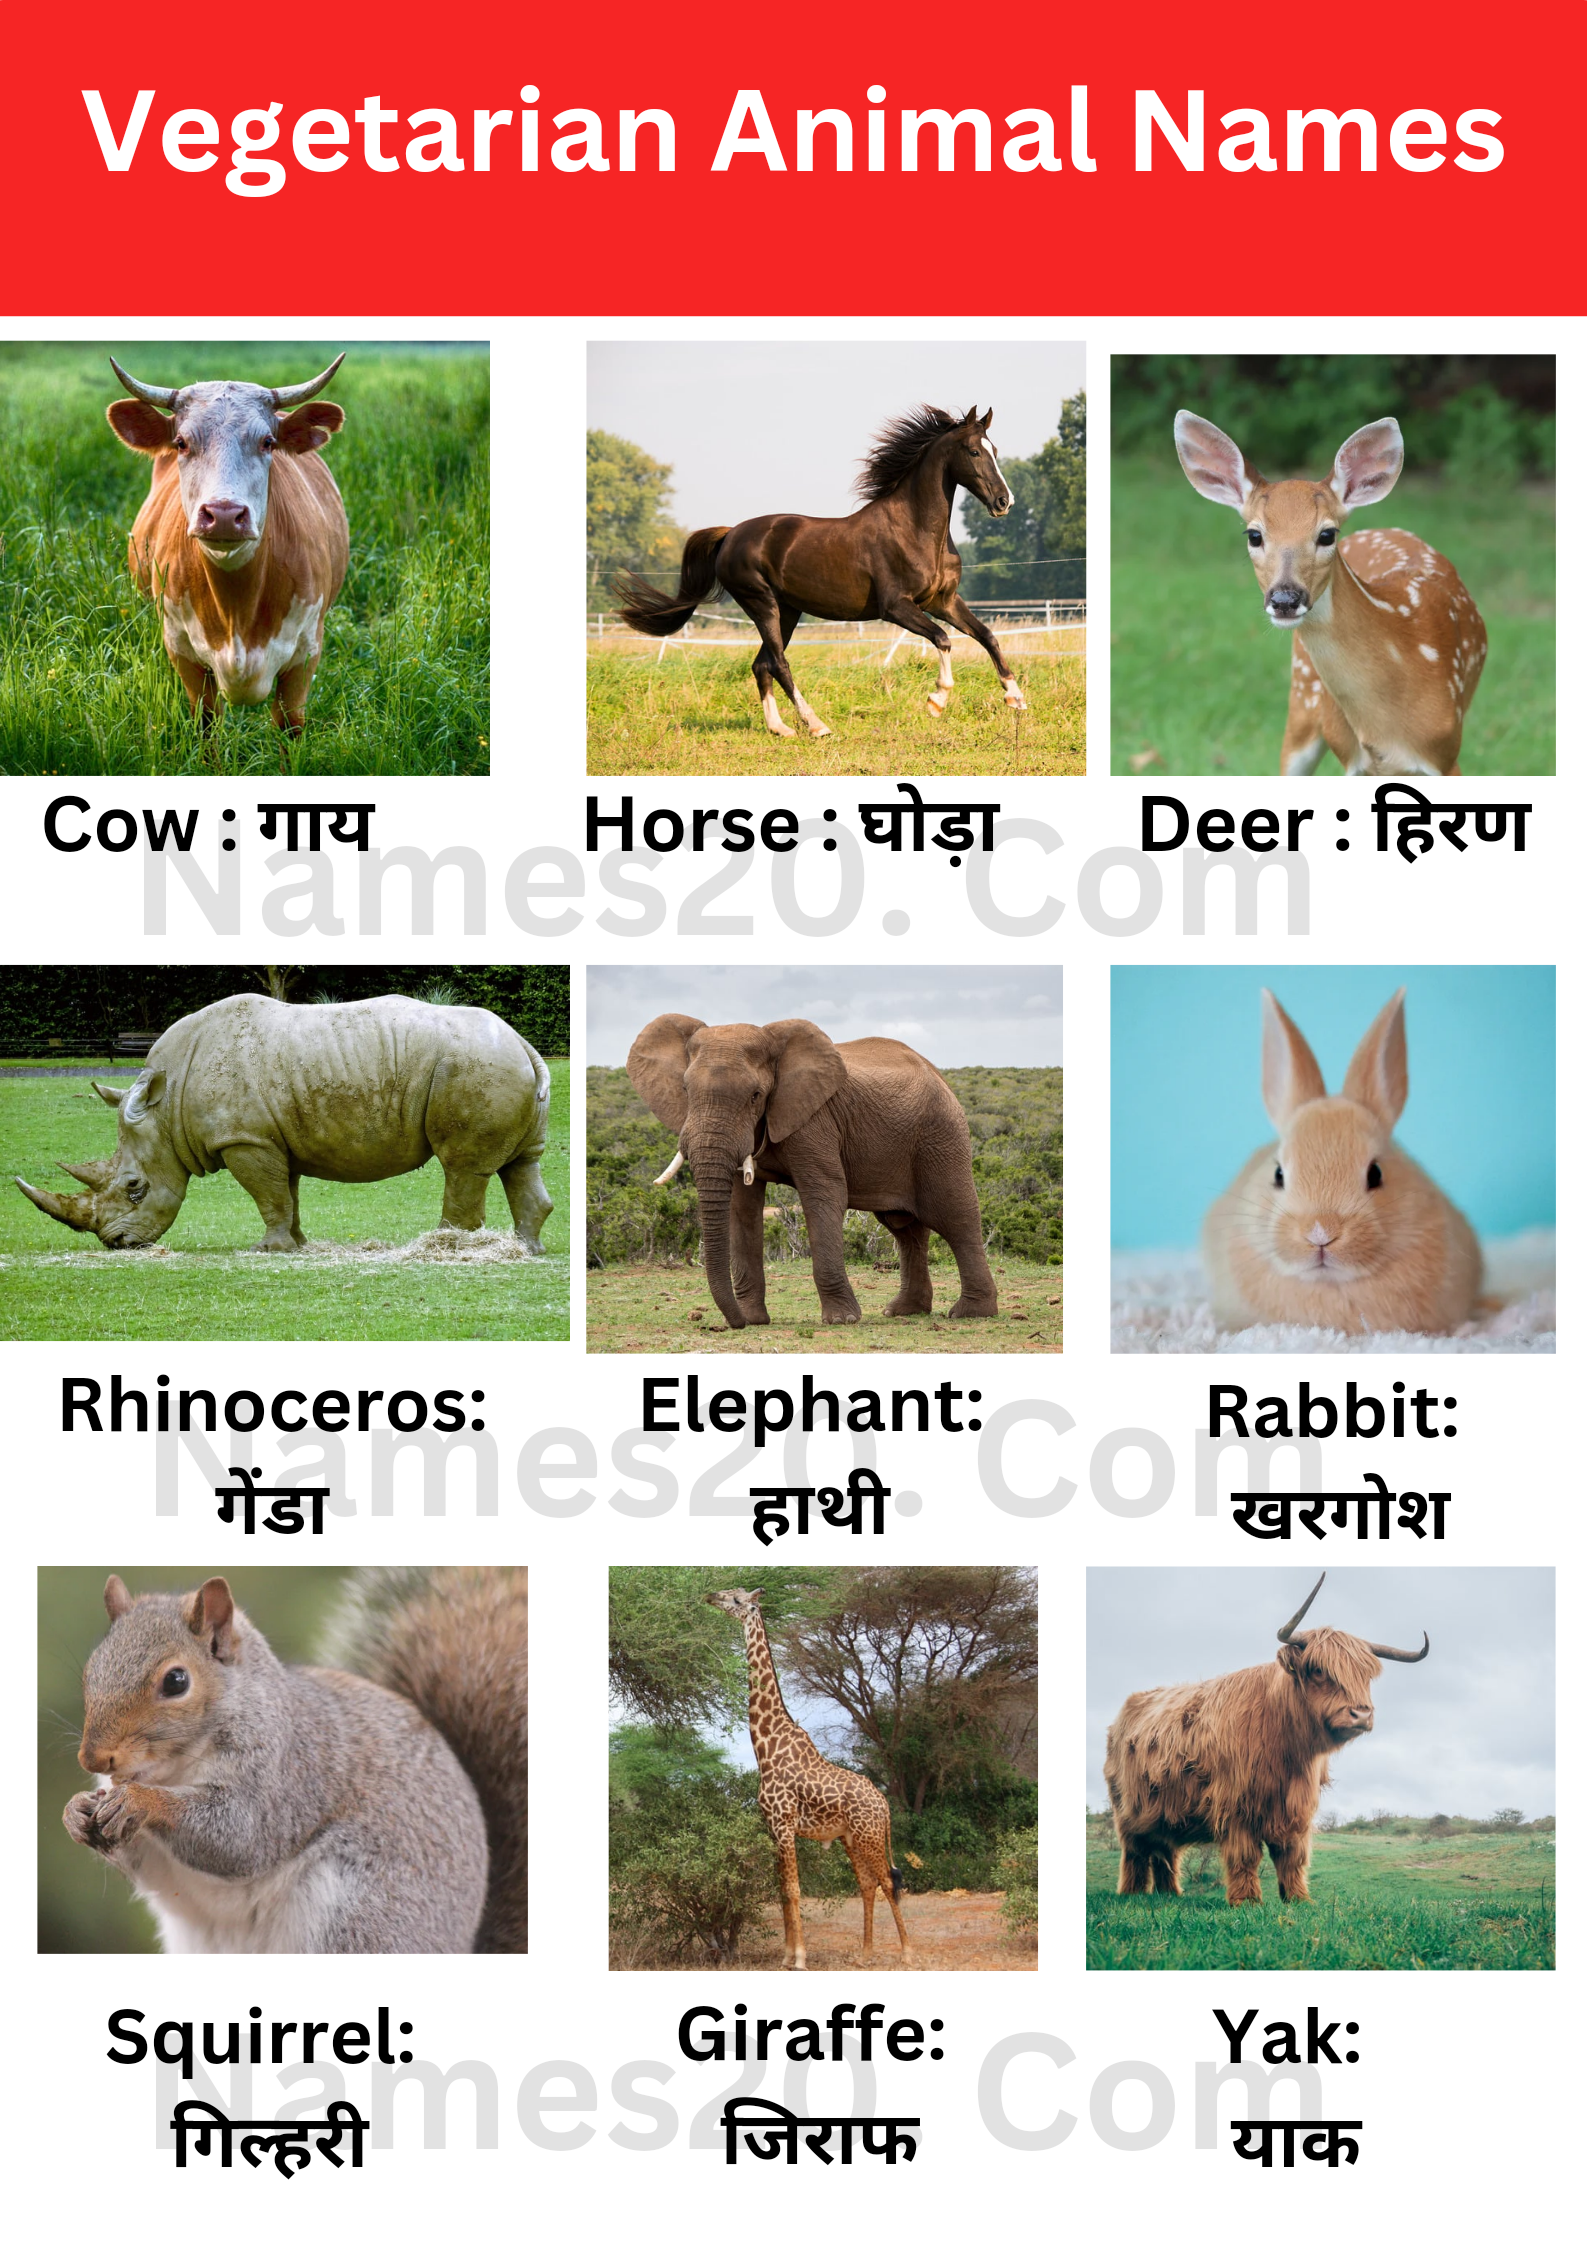 Vegetarian animal names : शाकाहारी जानवरों के नाम